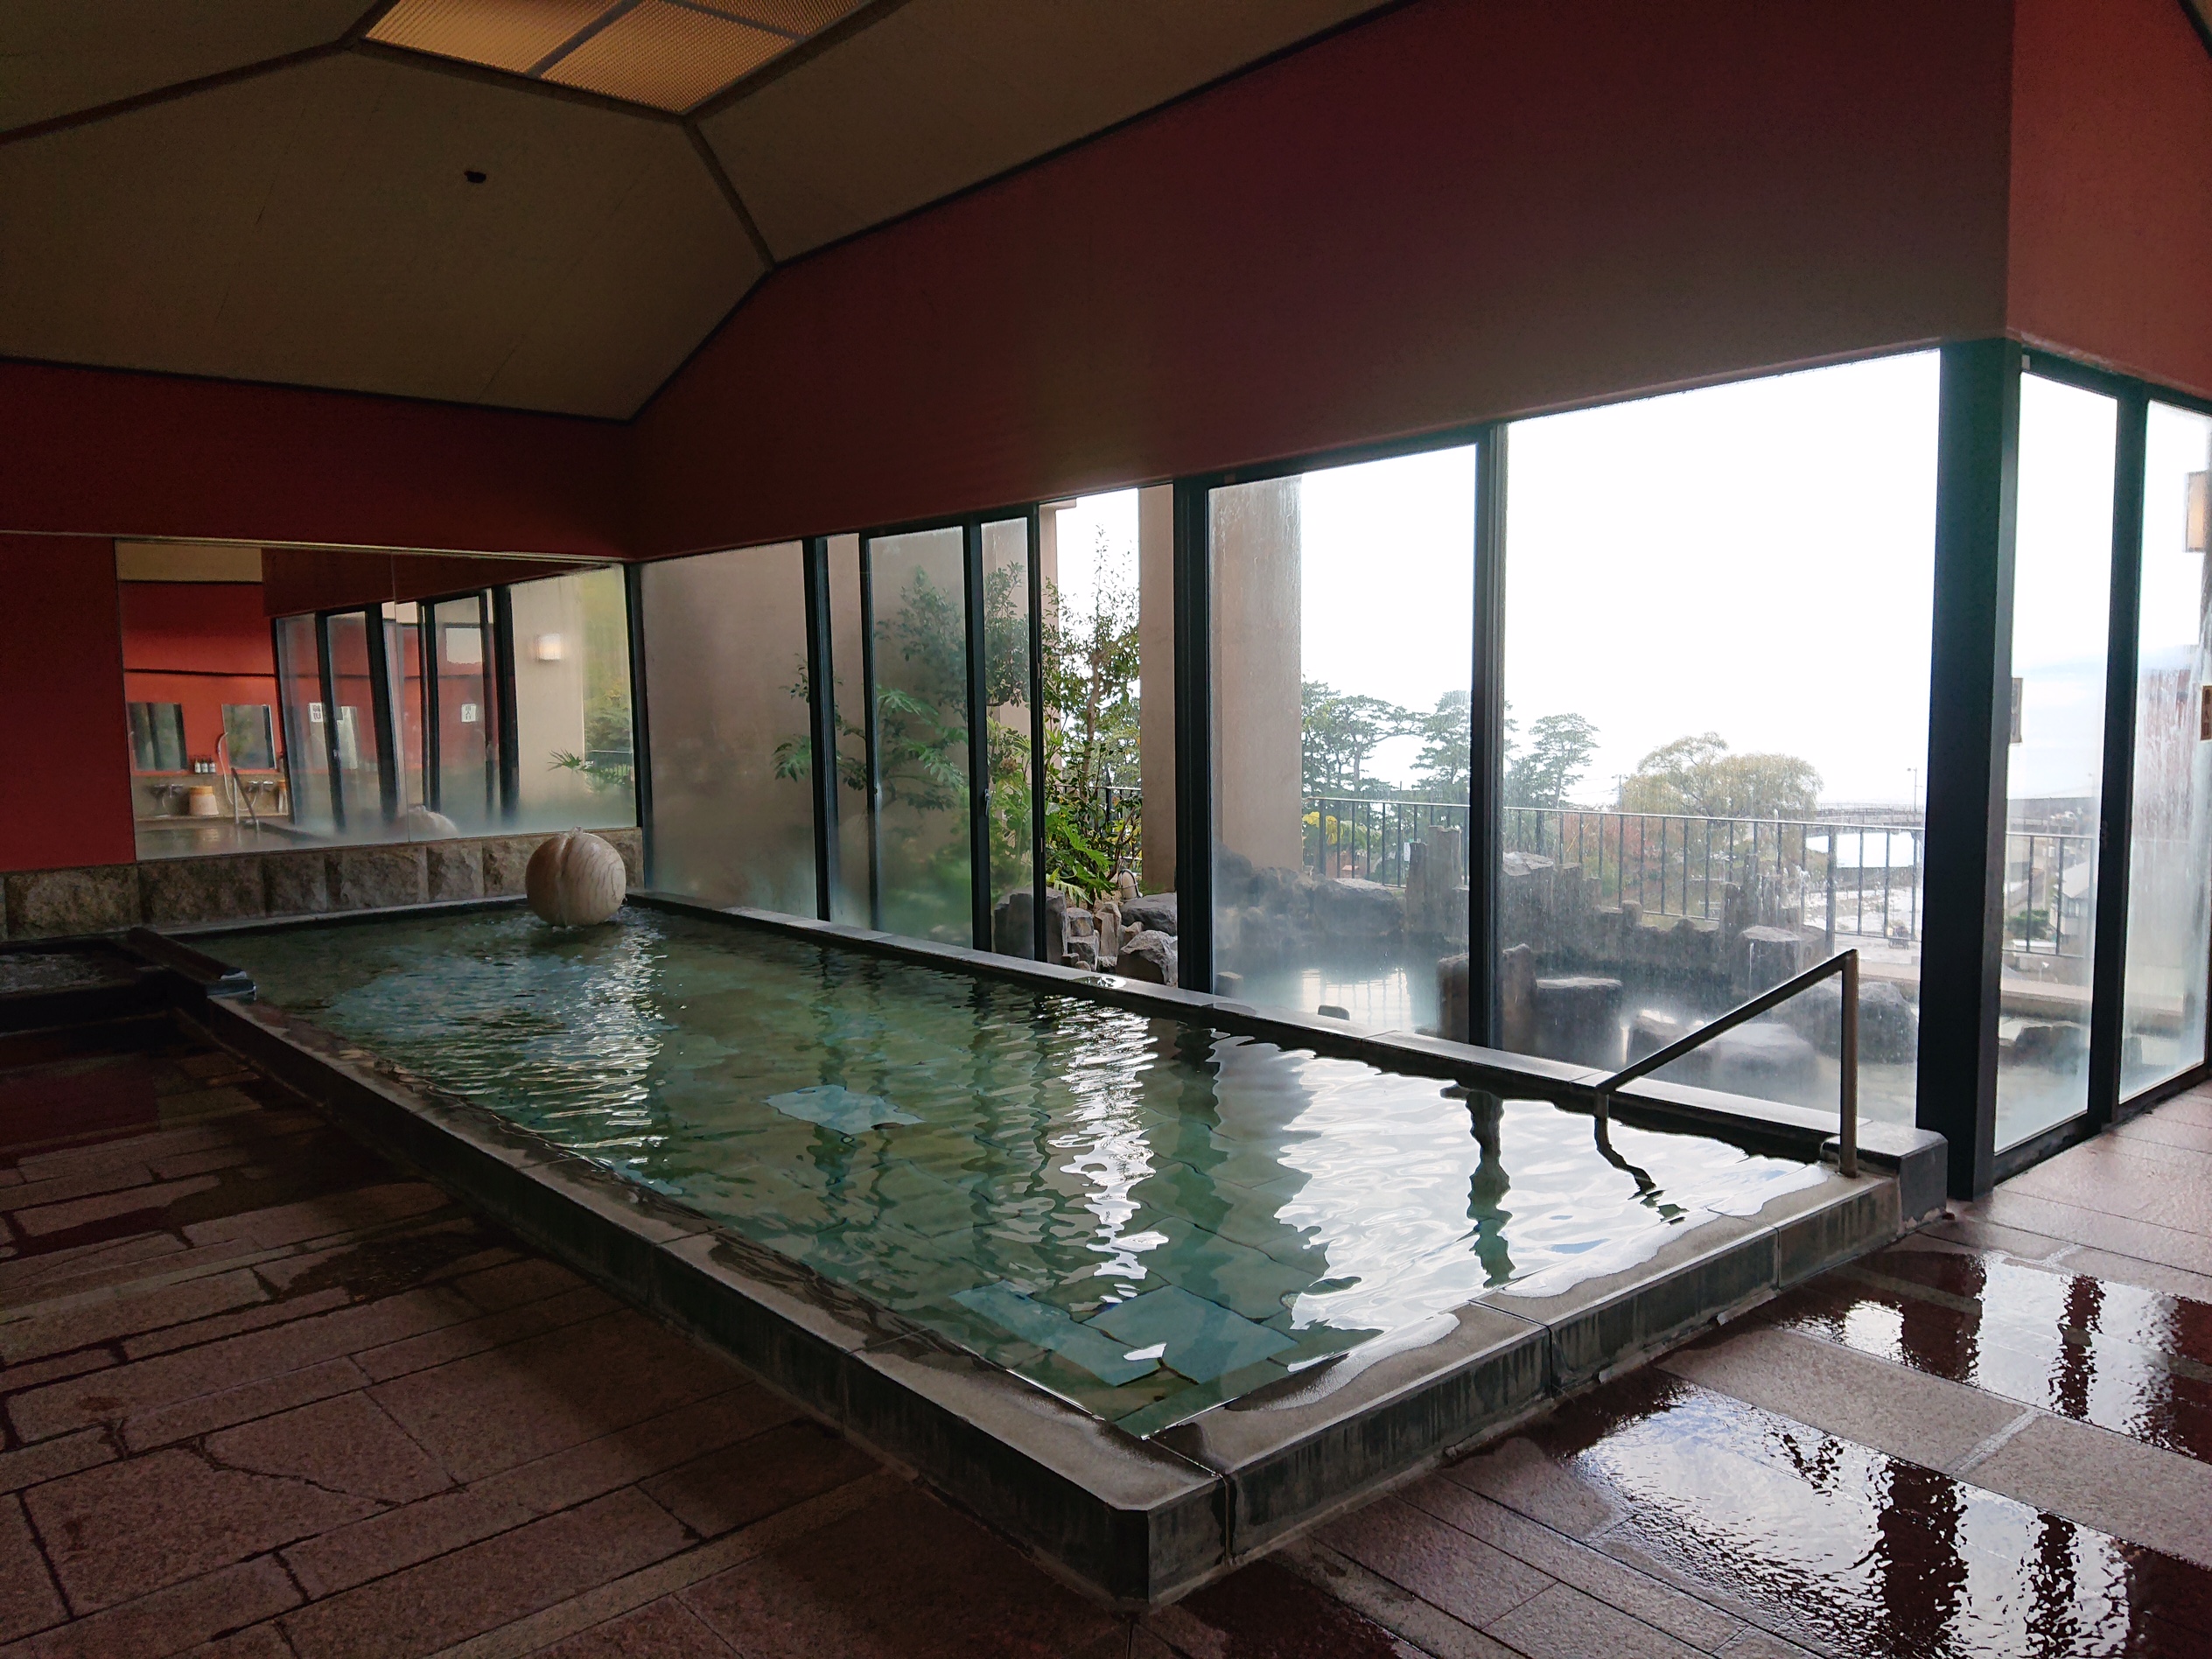 駿河湾を一望できる眺めの良い展望大浴場…